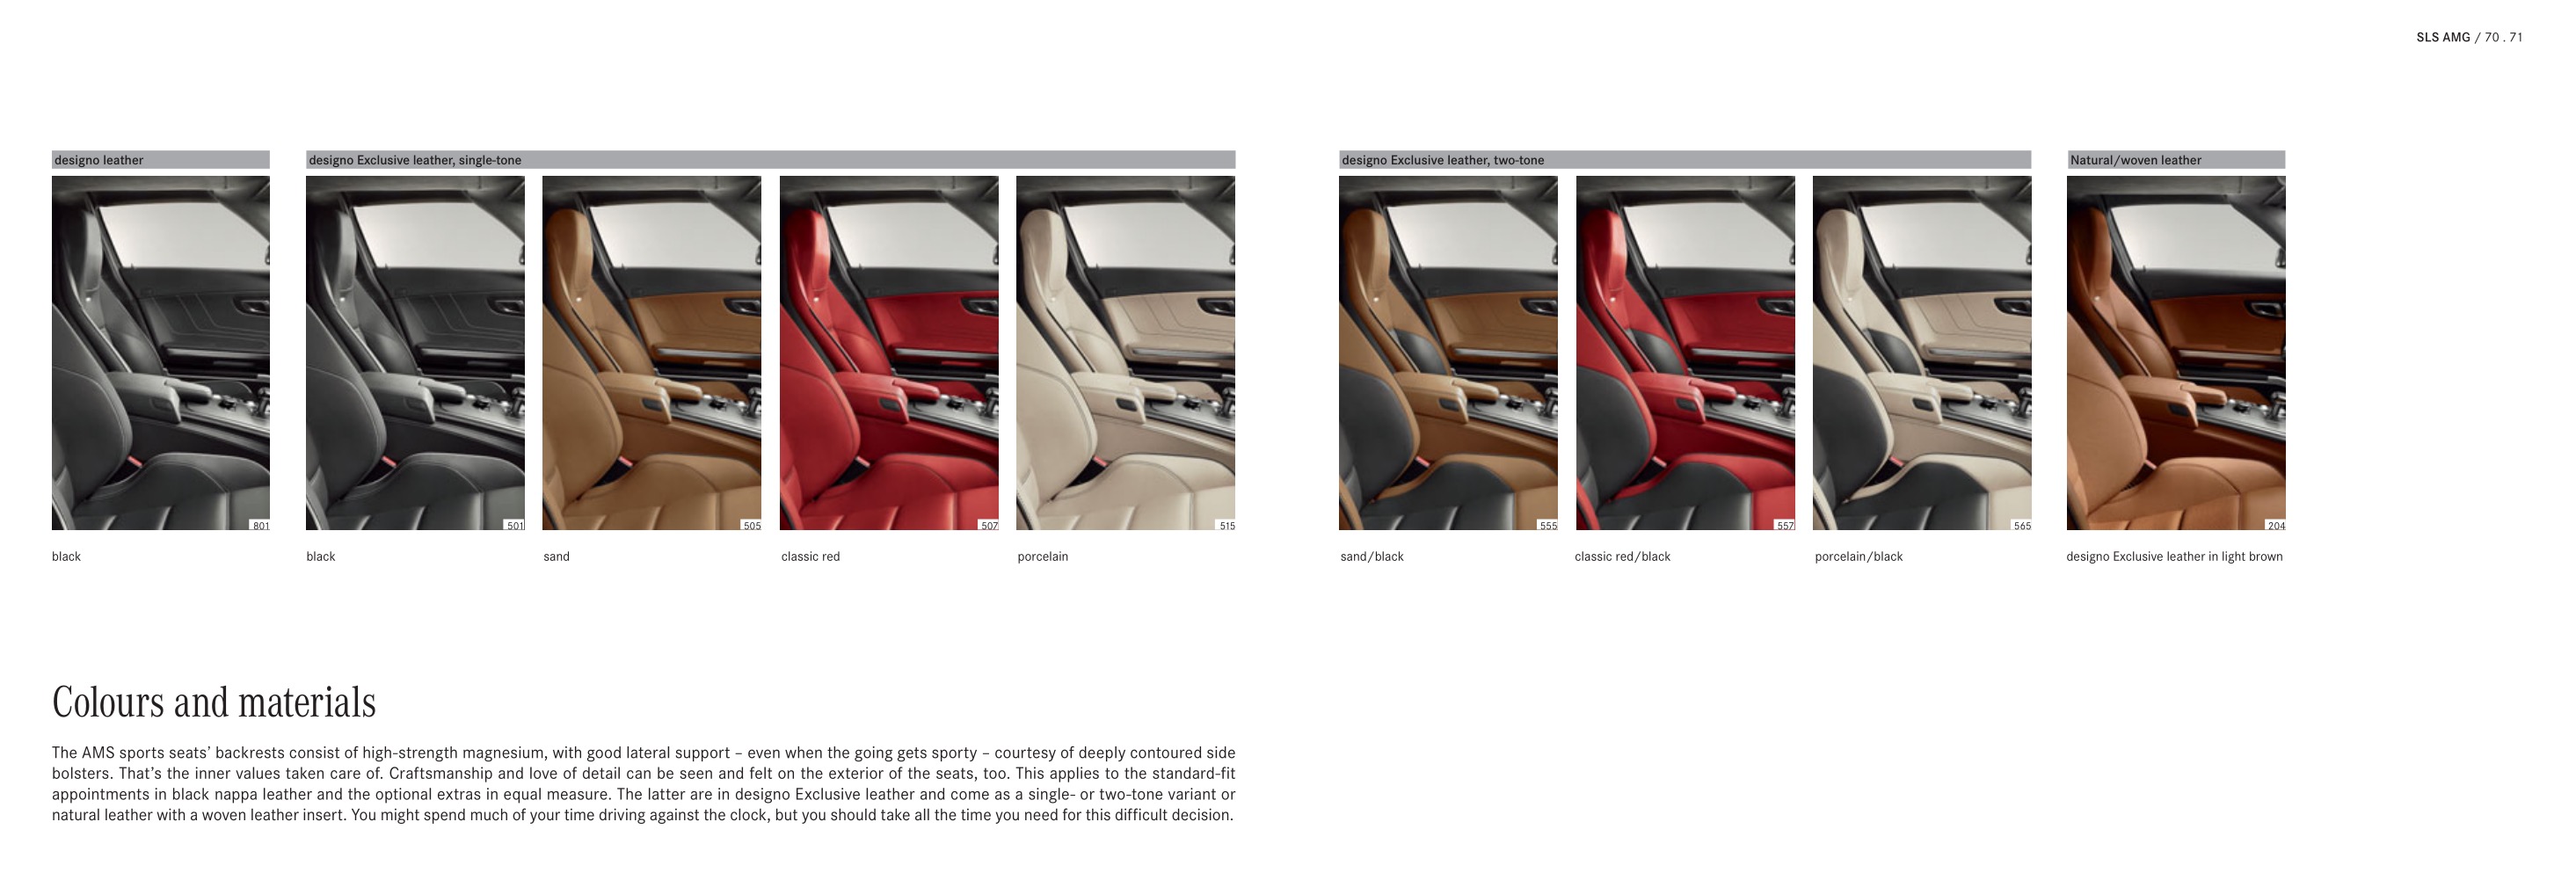 2013 Mercedes-Benz SLS Class Brochure Page 22